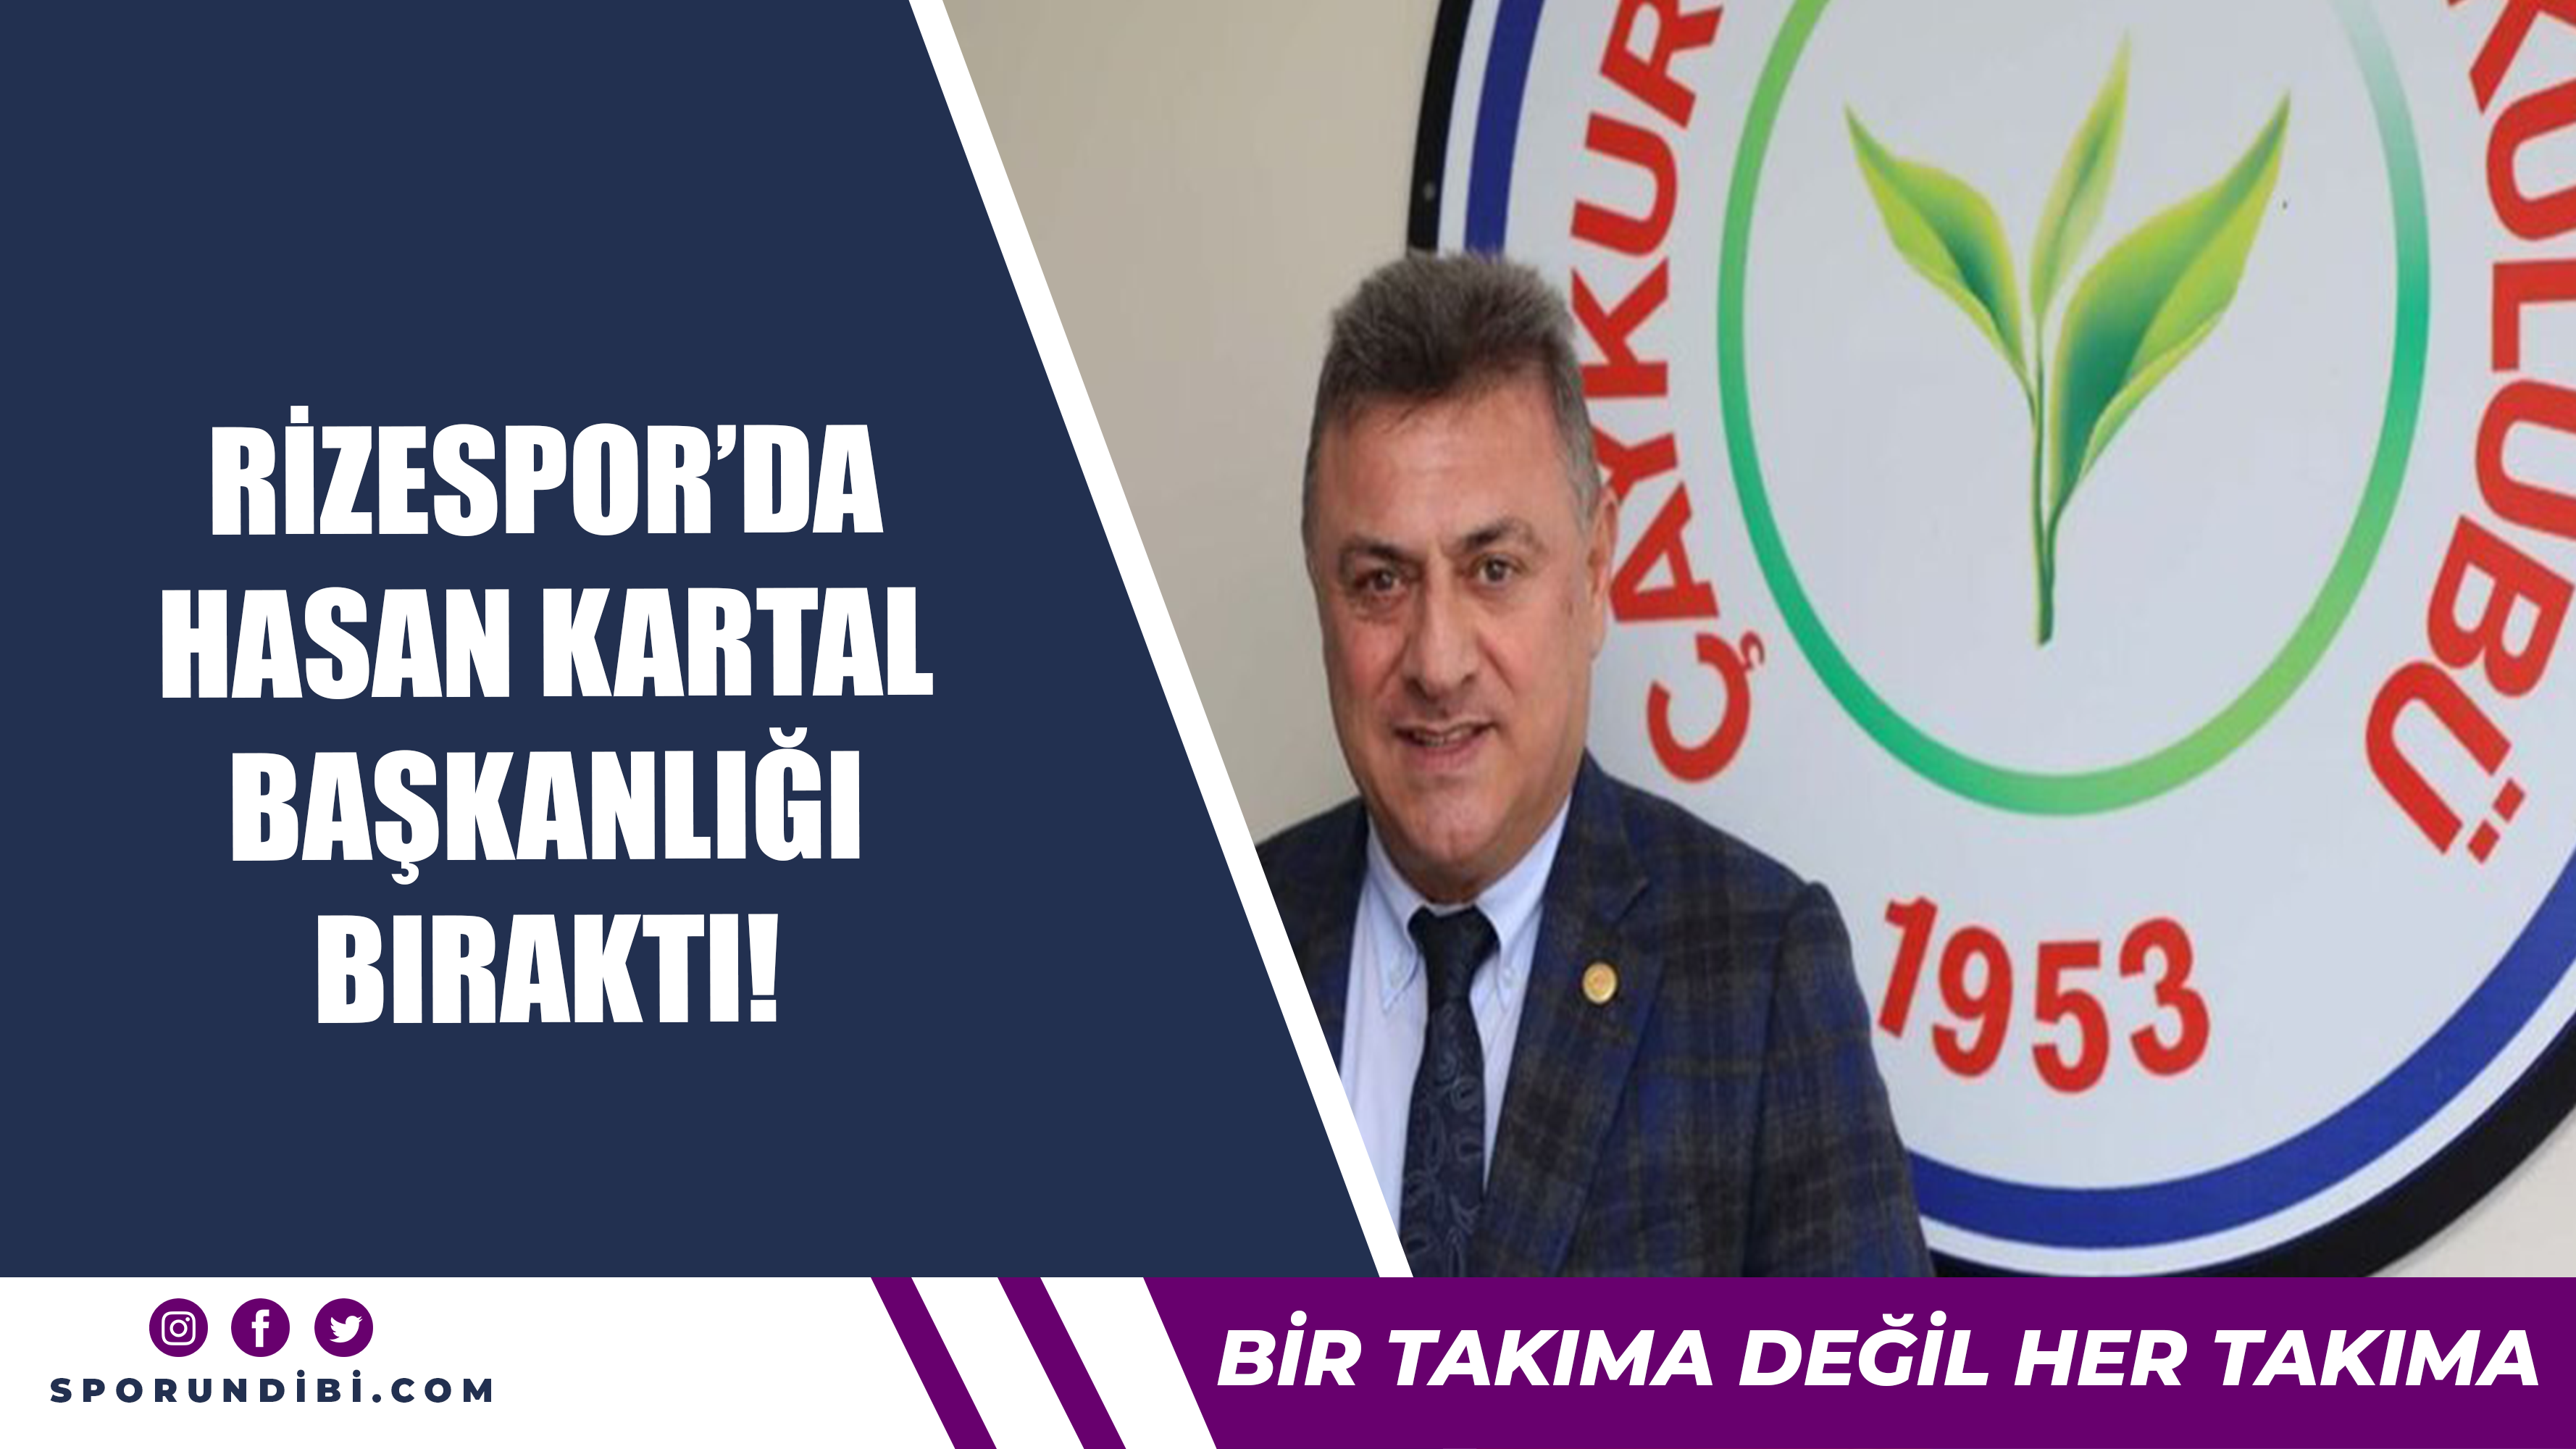 Rizespor'da Hasan Kartal başkanlığı bıraktı!